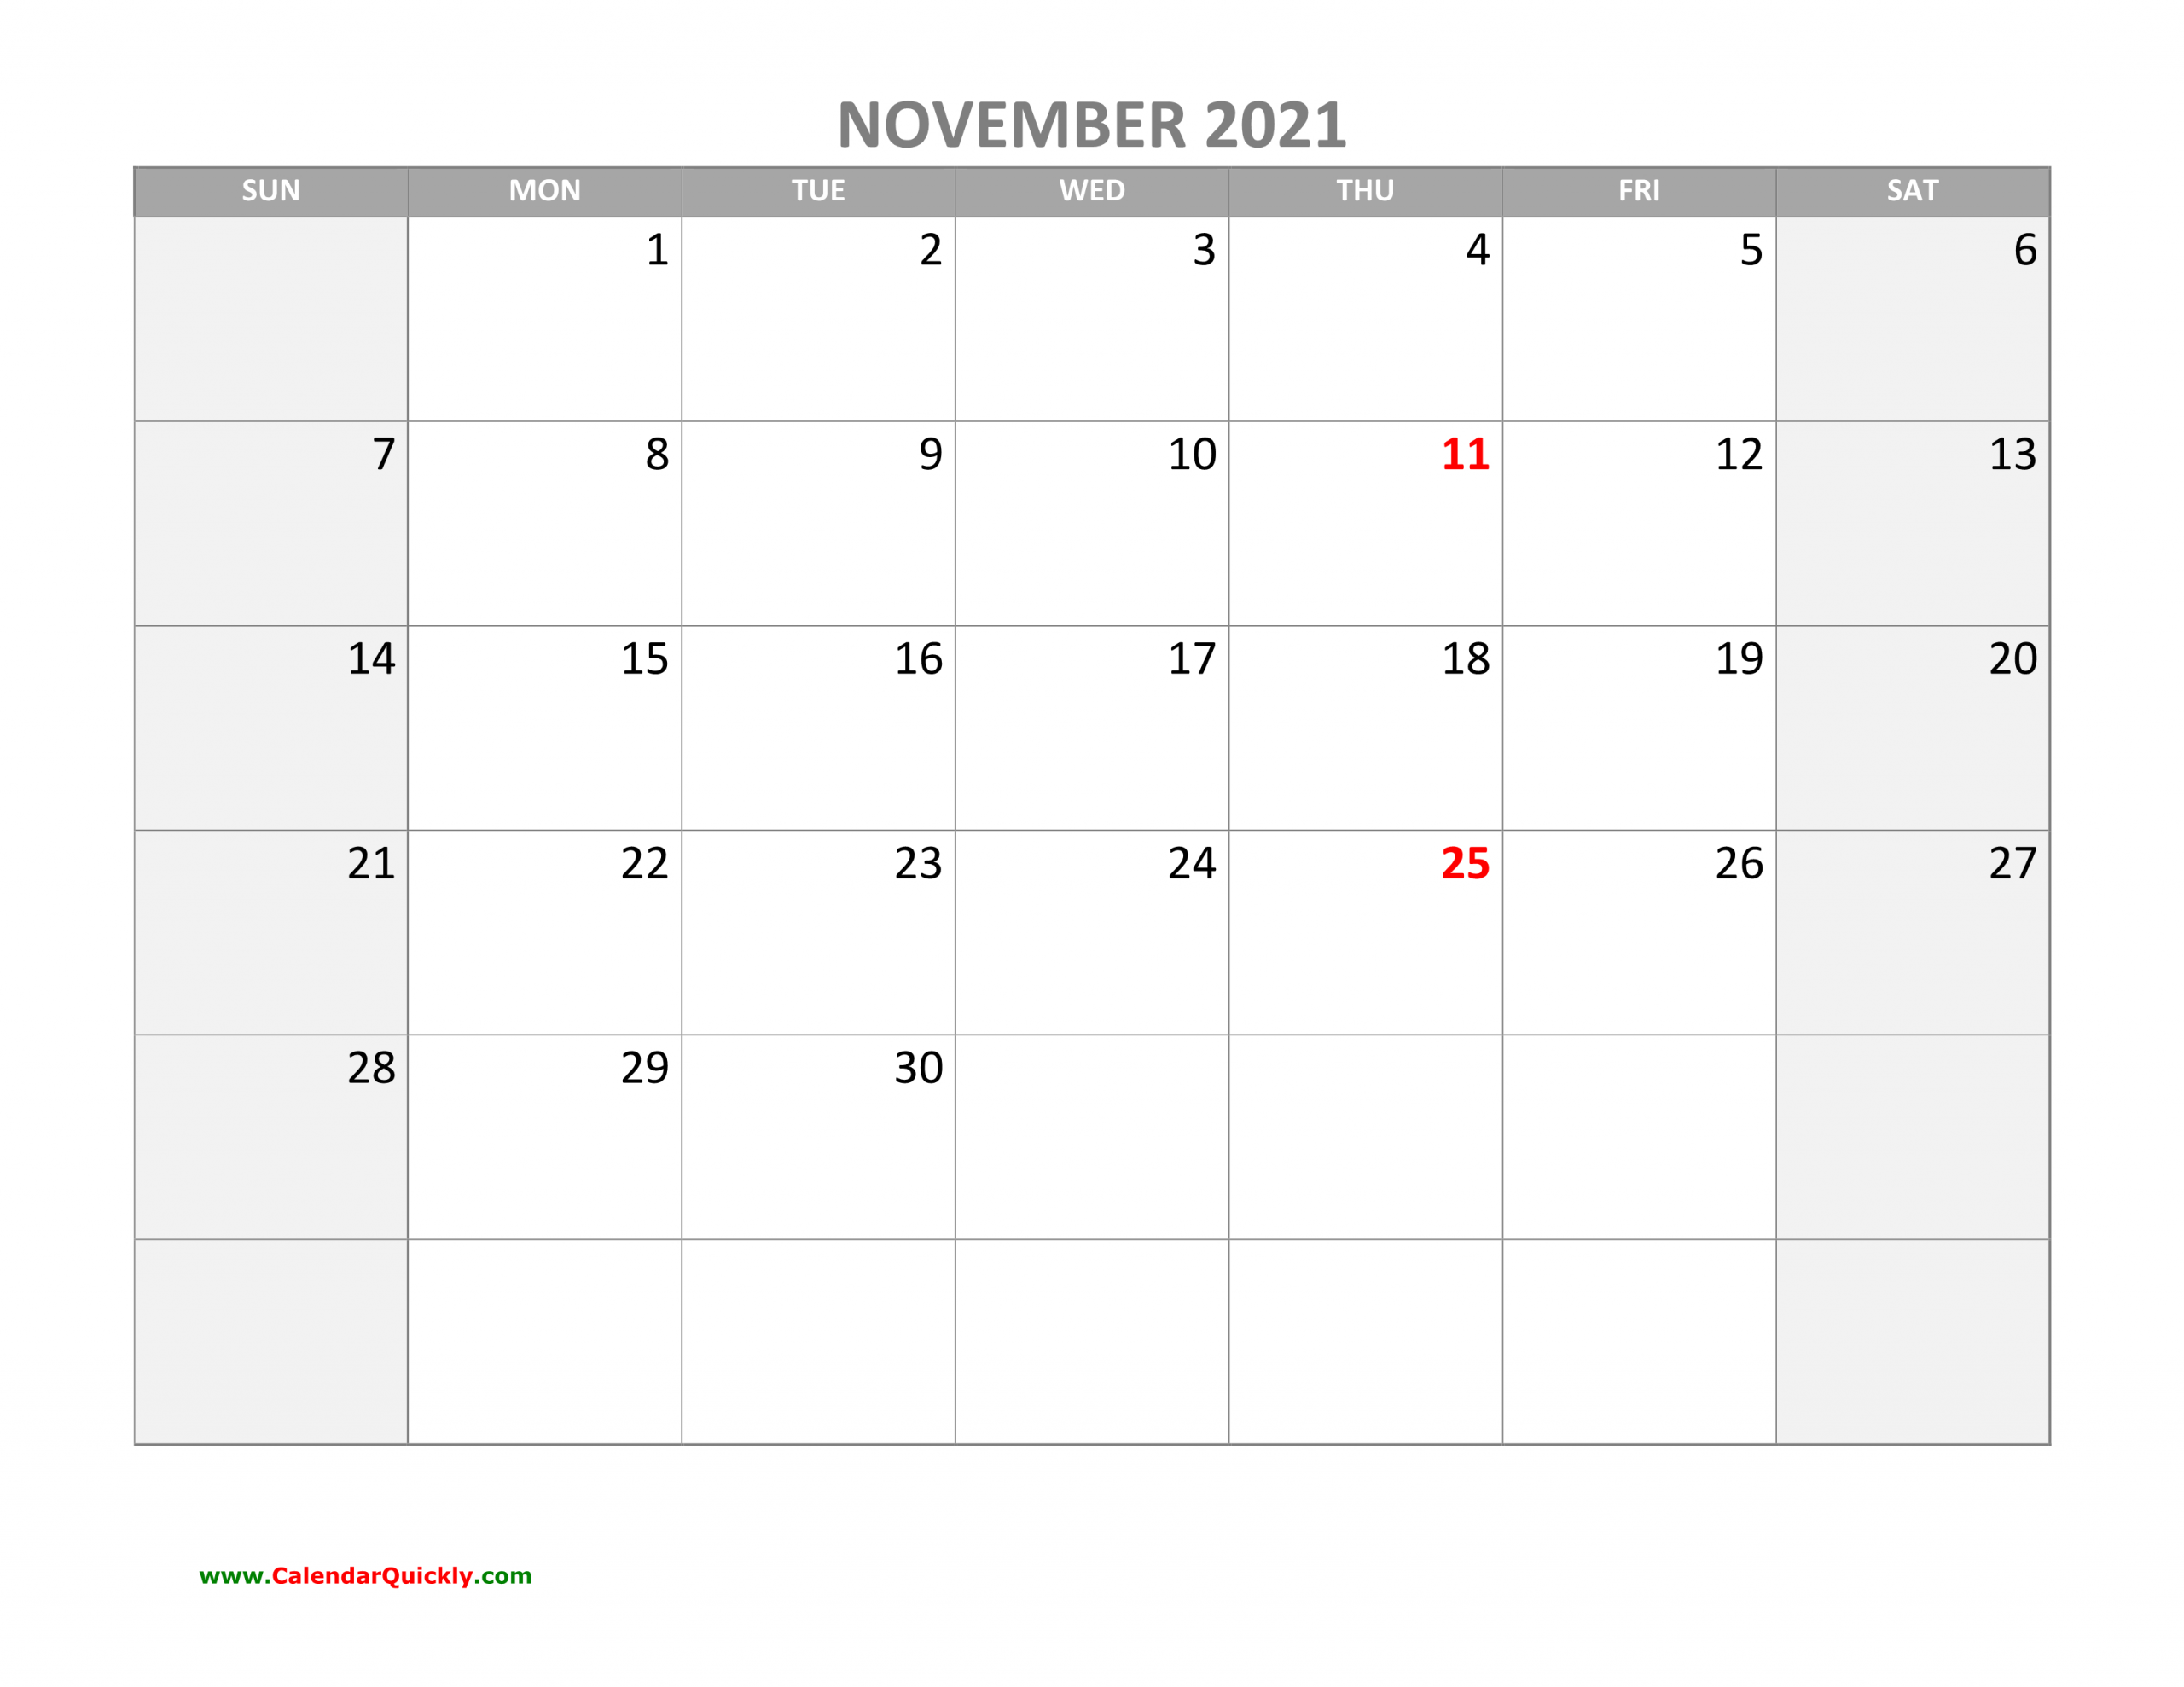 November Calendar 2021 With Holidays | Calendar Quickly